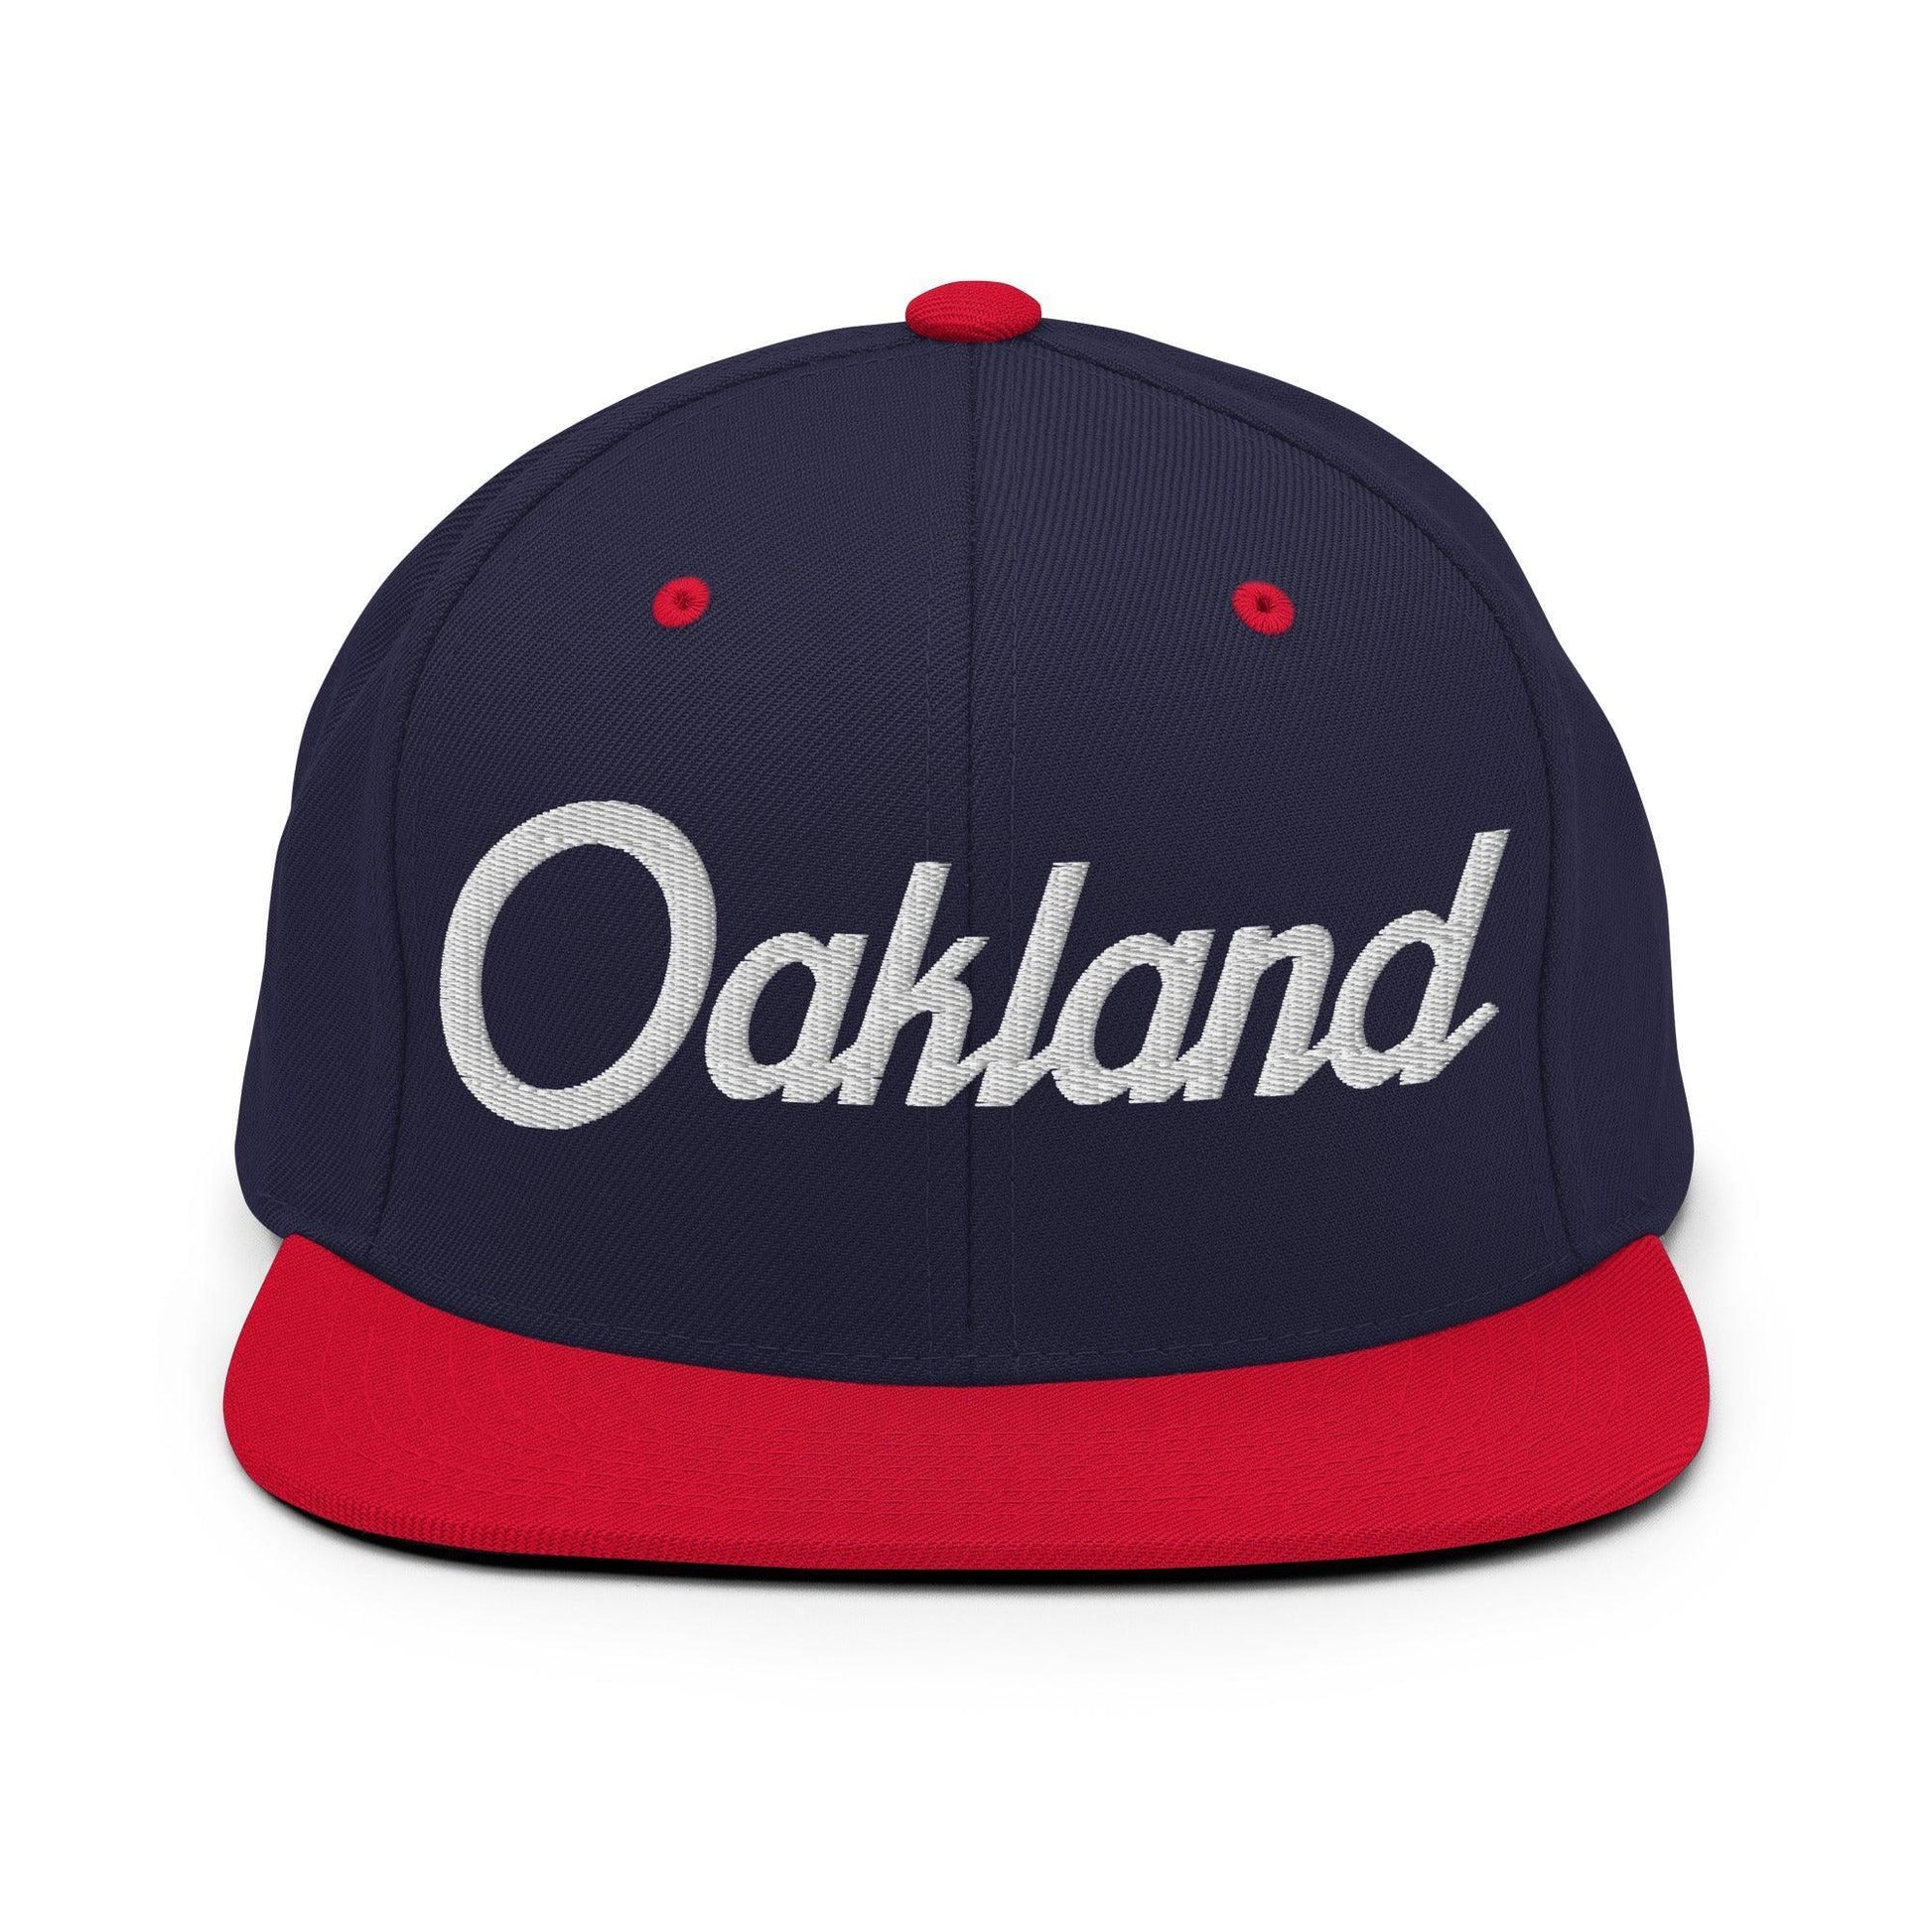 Oakland Script Snapback Hat Navy/ Red